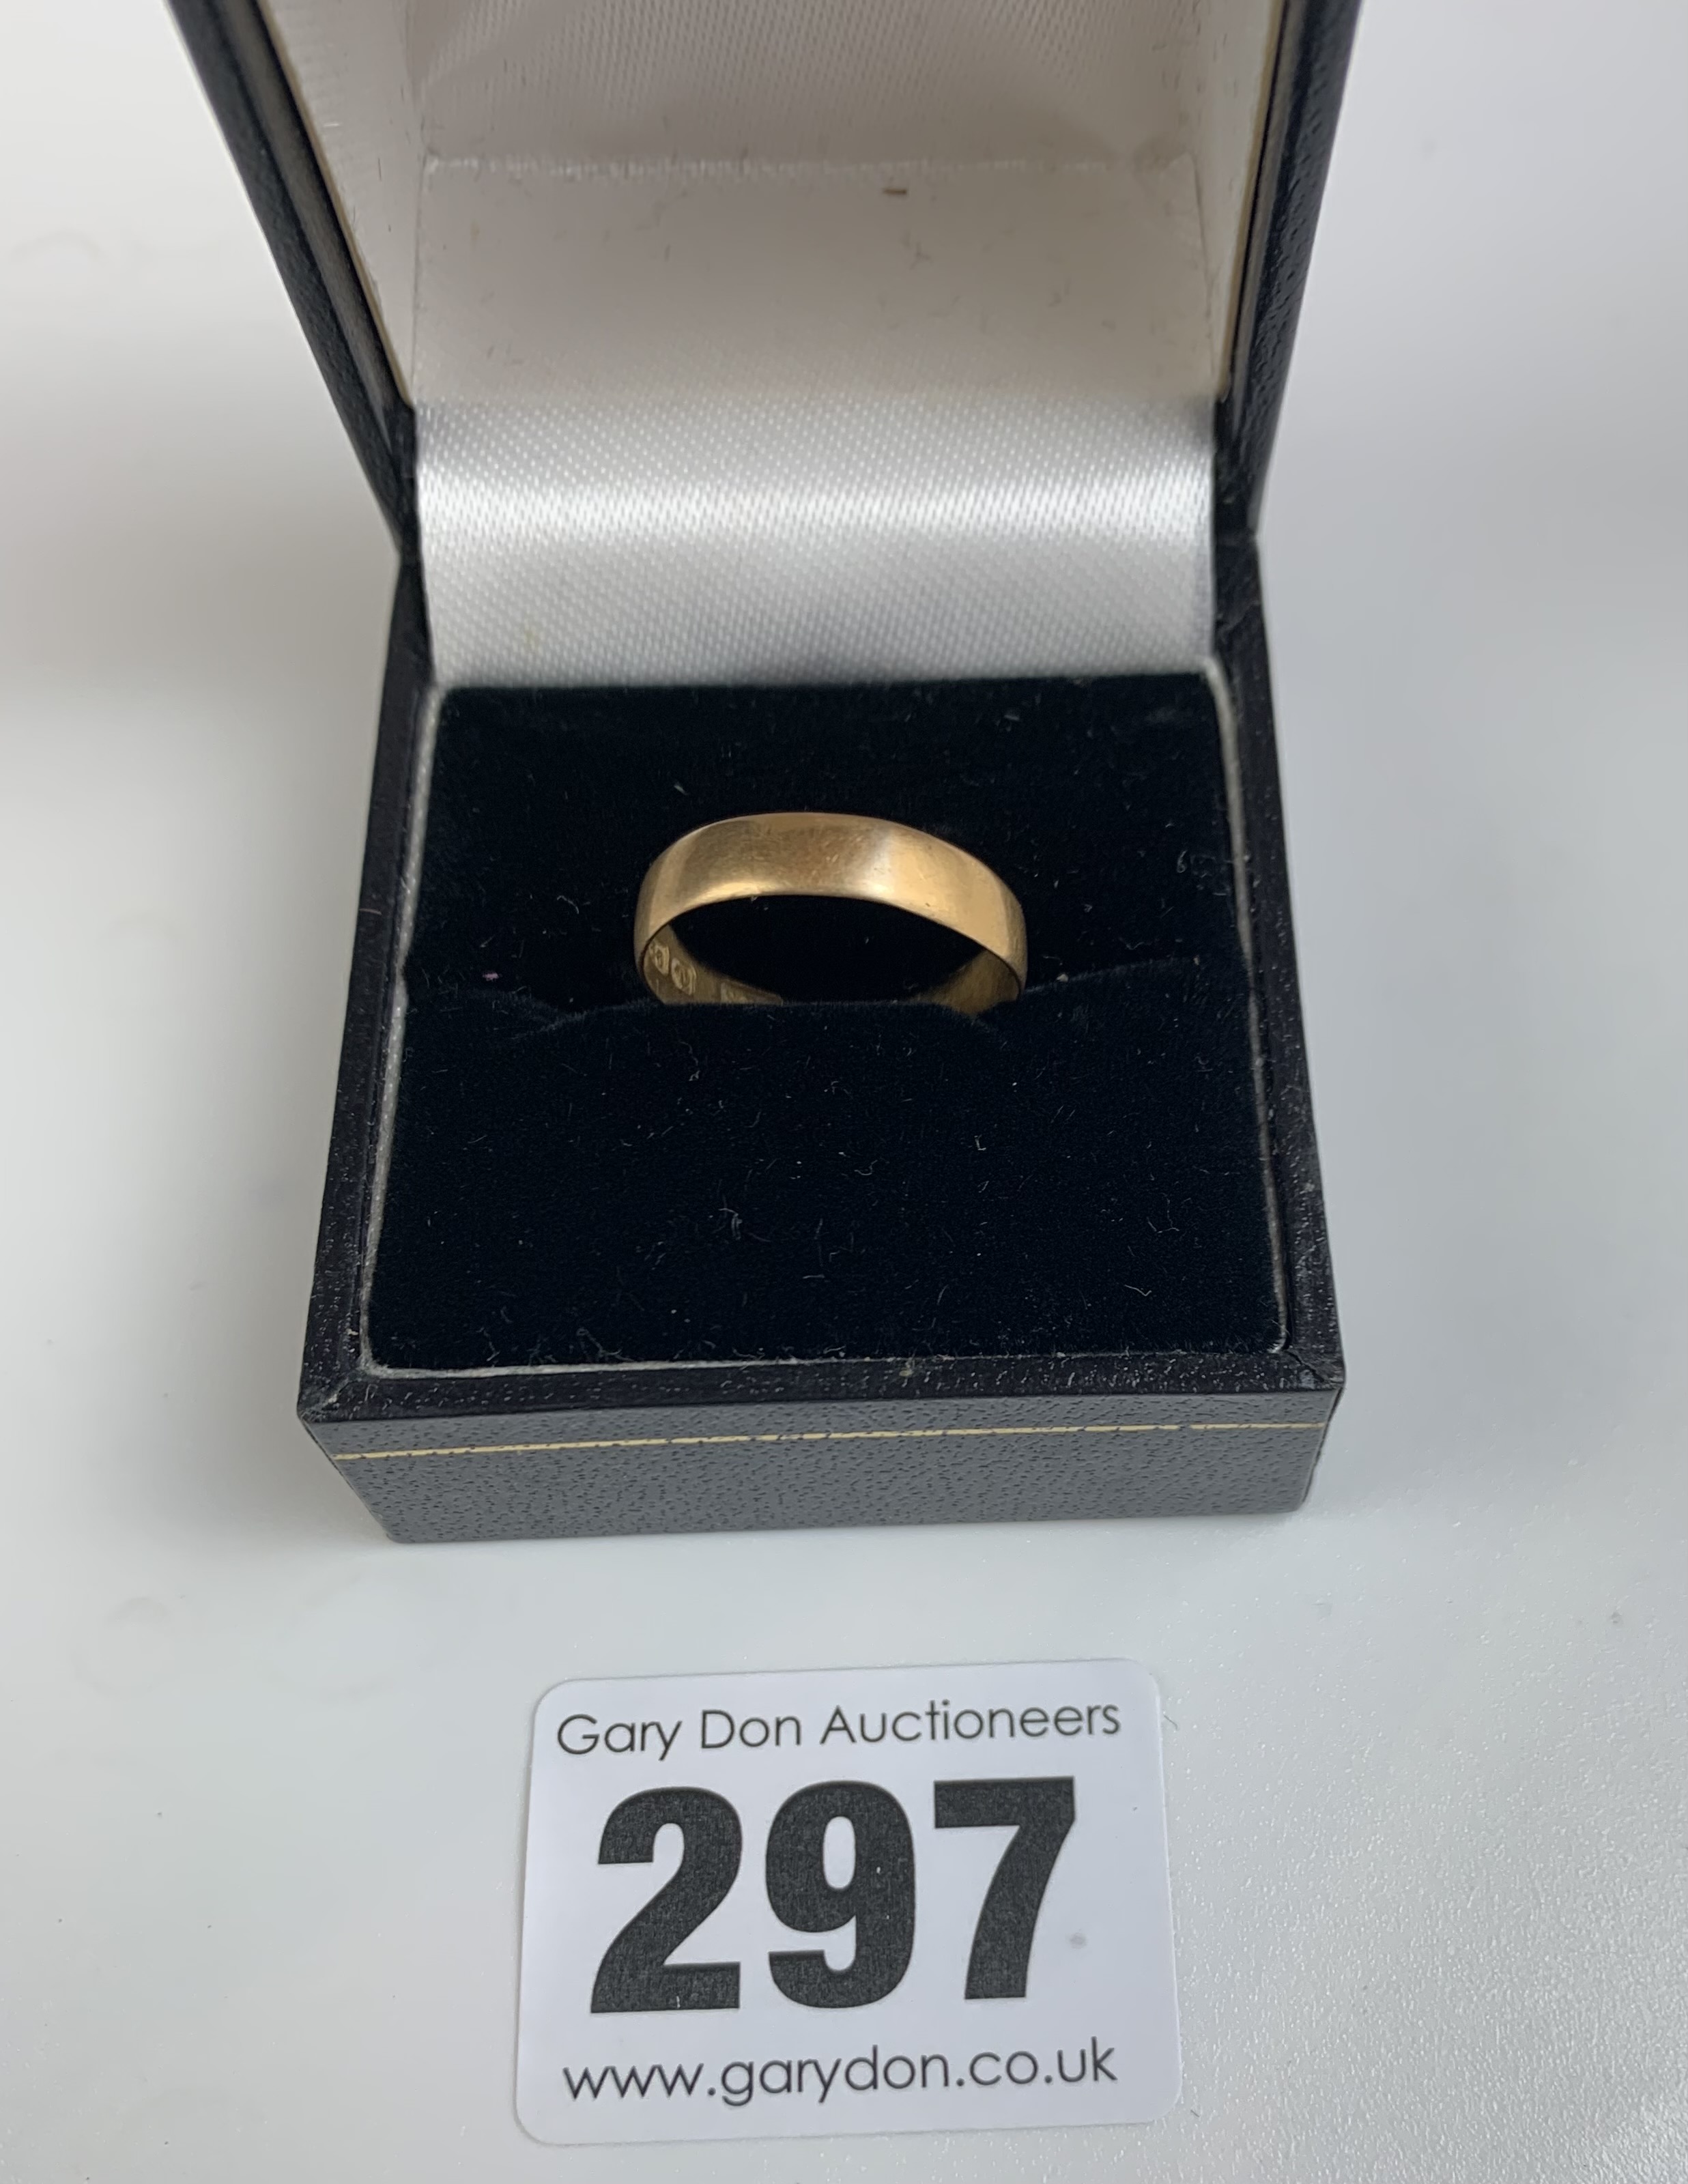 22k gold wedding band, size L, w: 1.6 gms